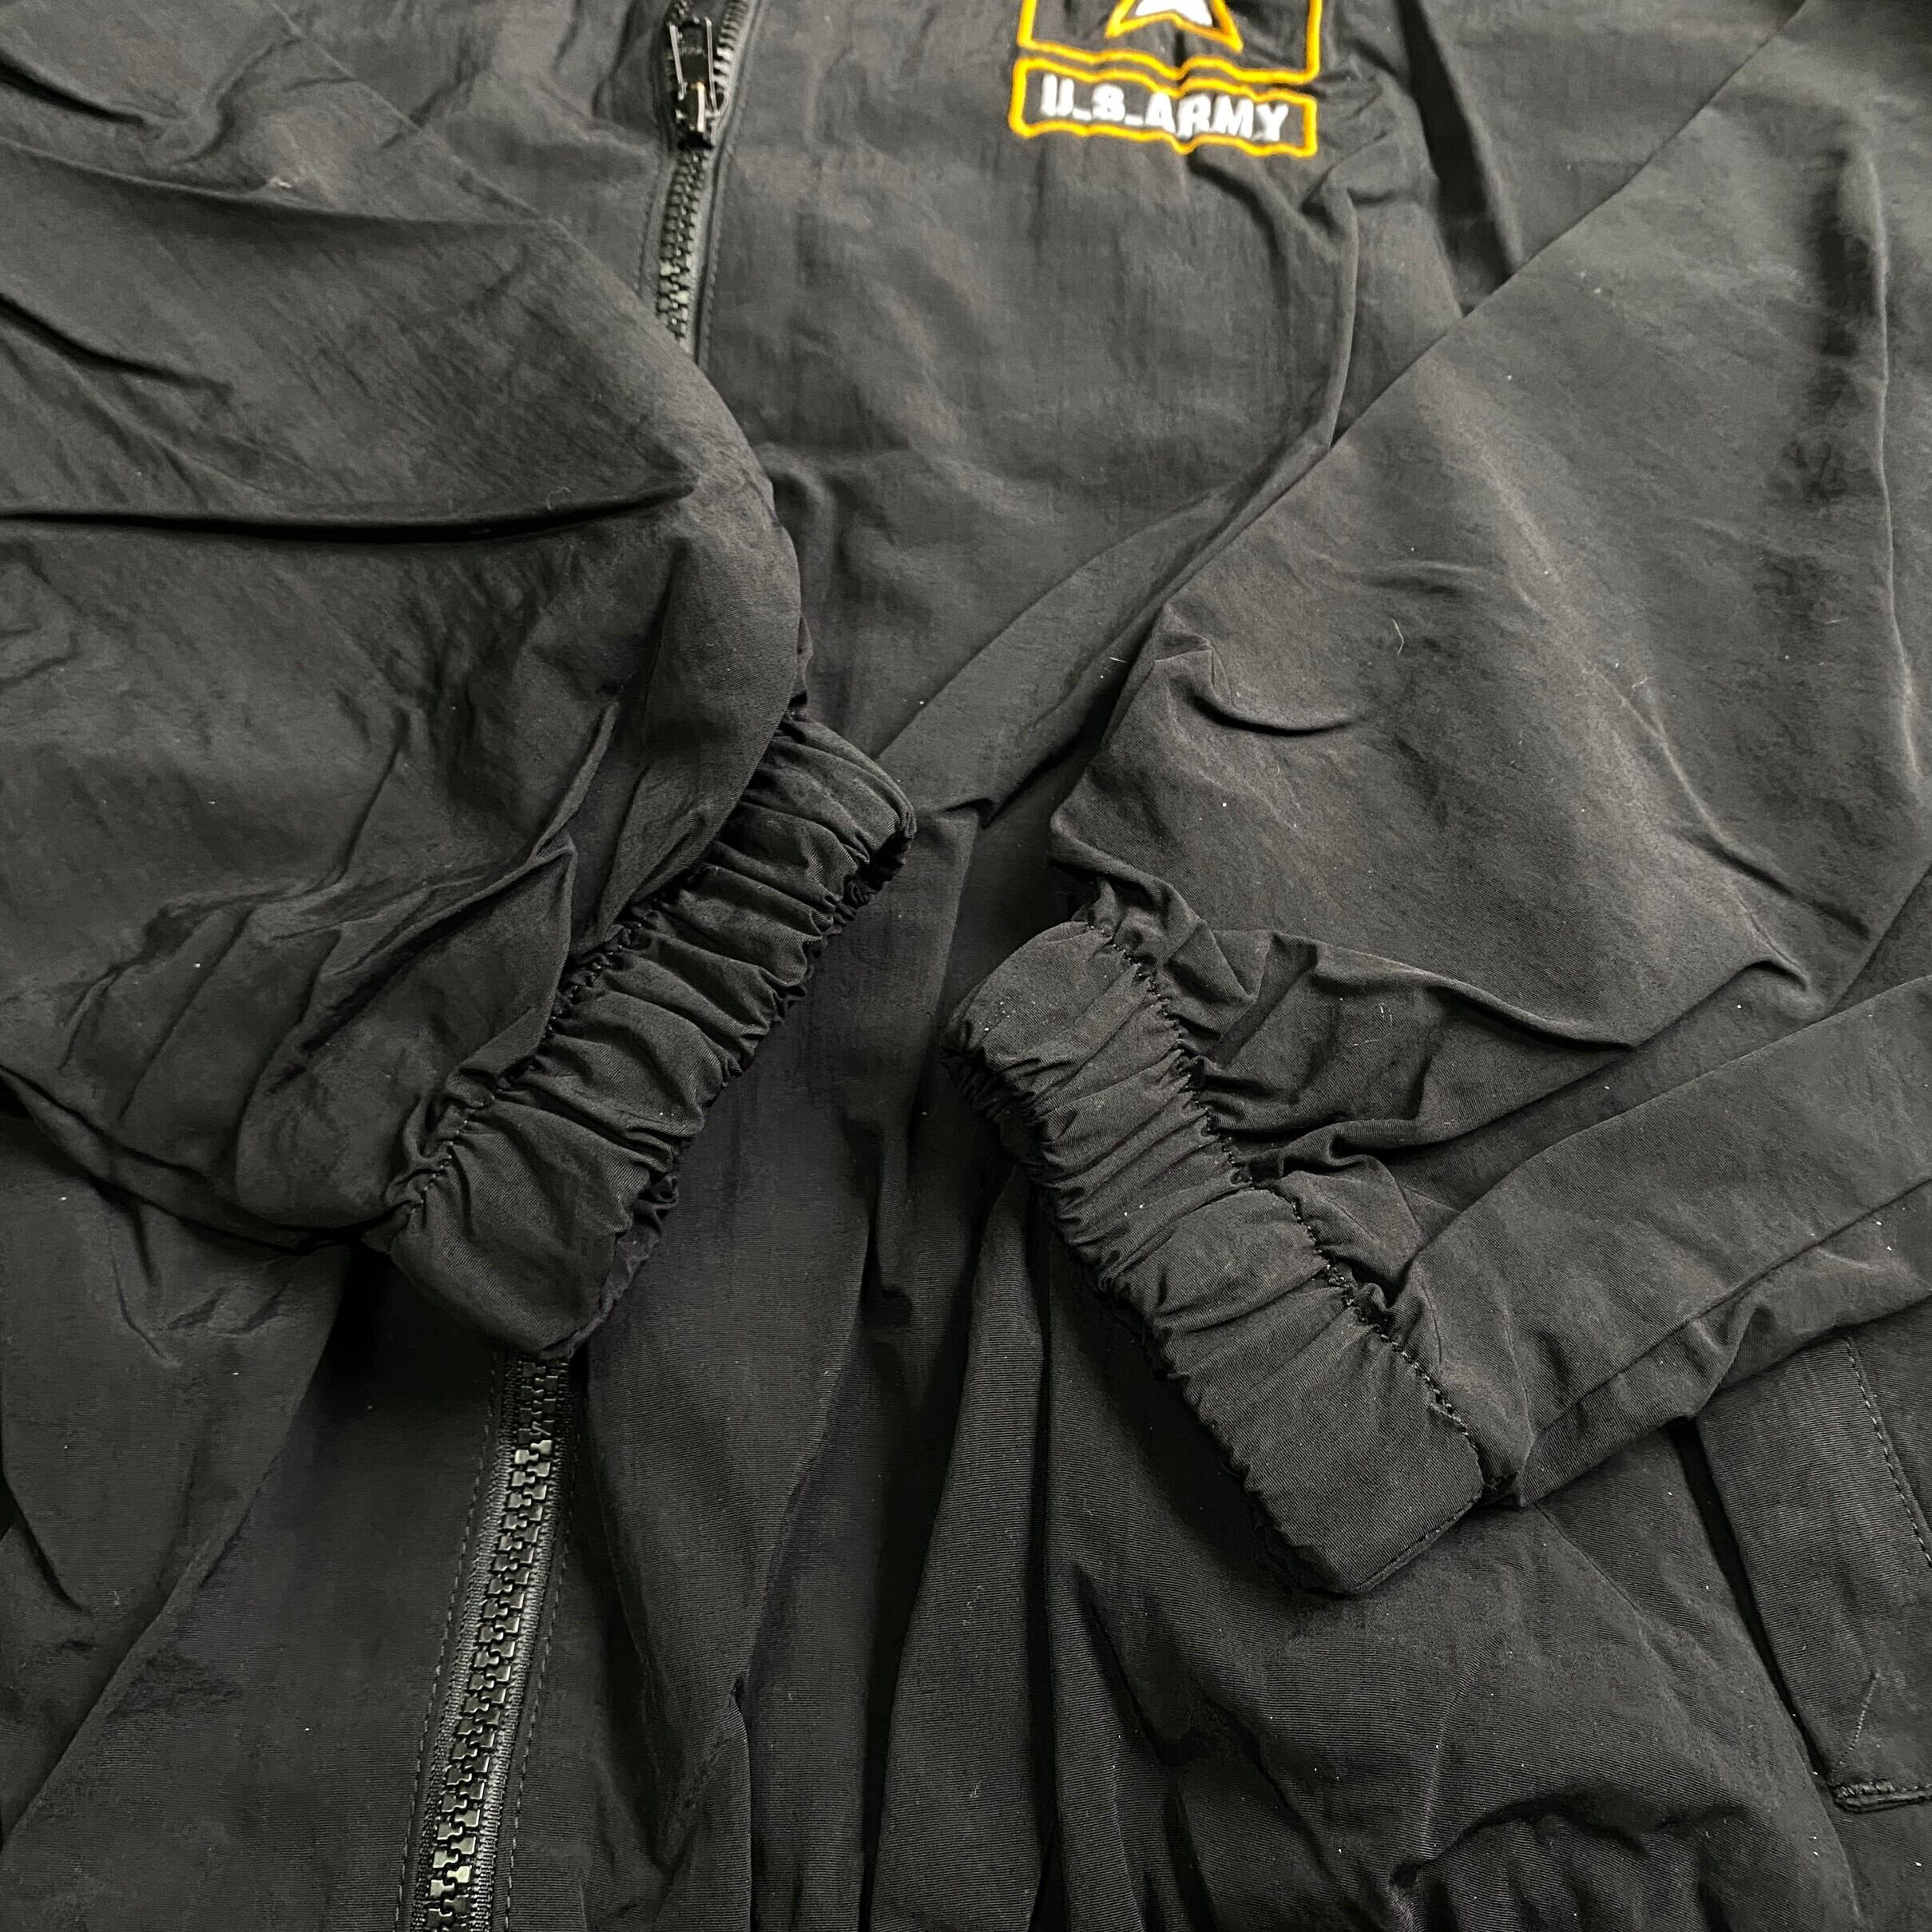 U.S.ARMY ナイロンジャケット 刺繍ロゴ ヴィンテージ ブラック Lサイズ